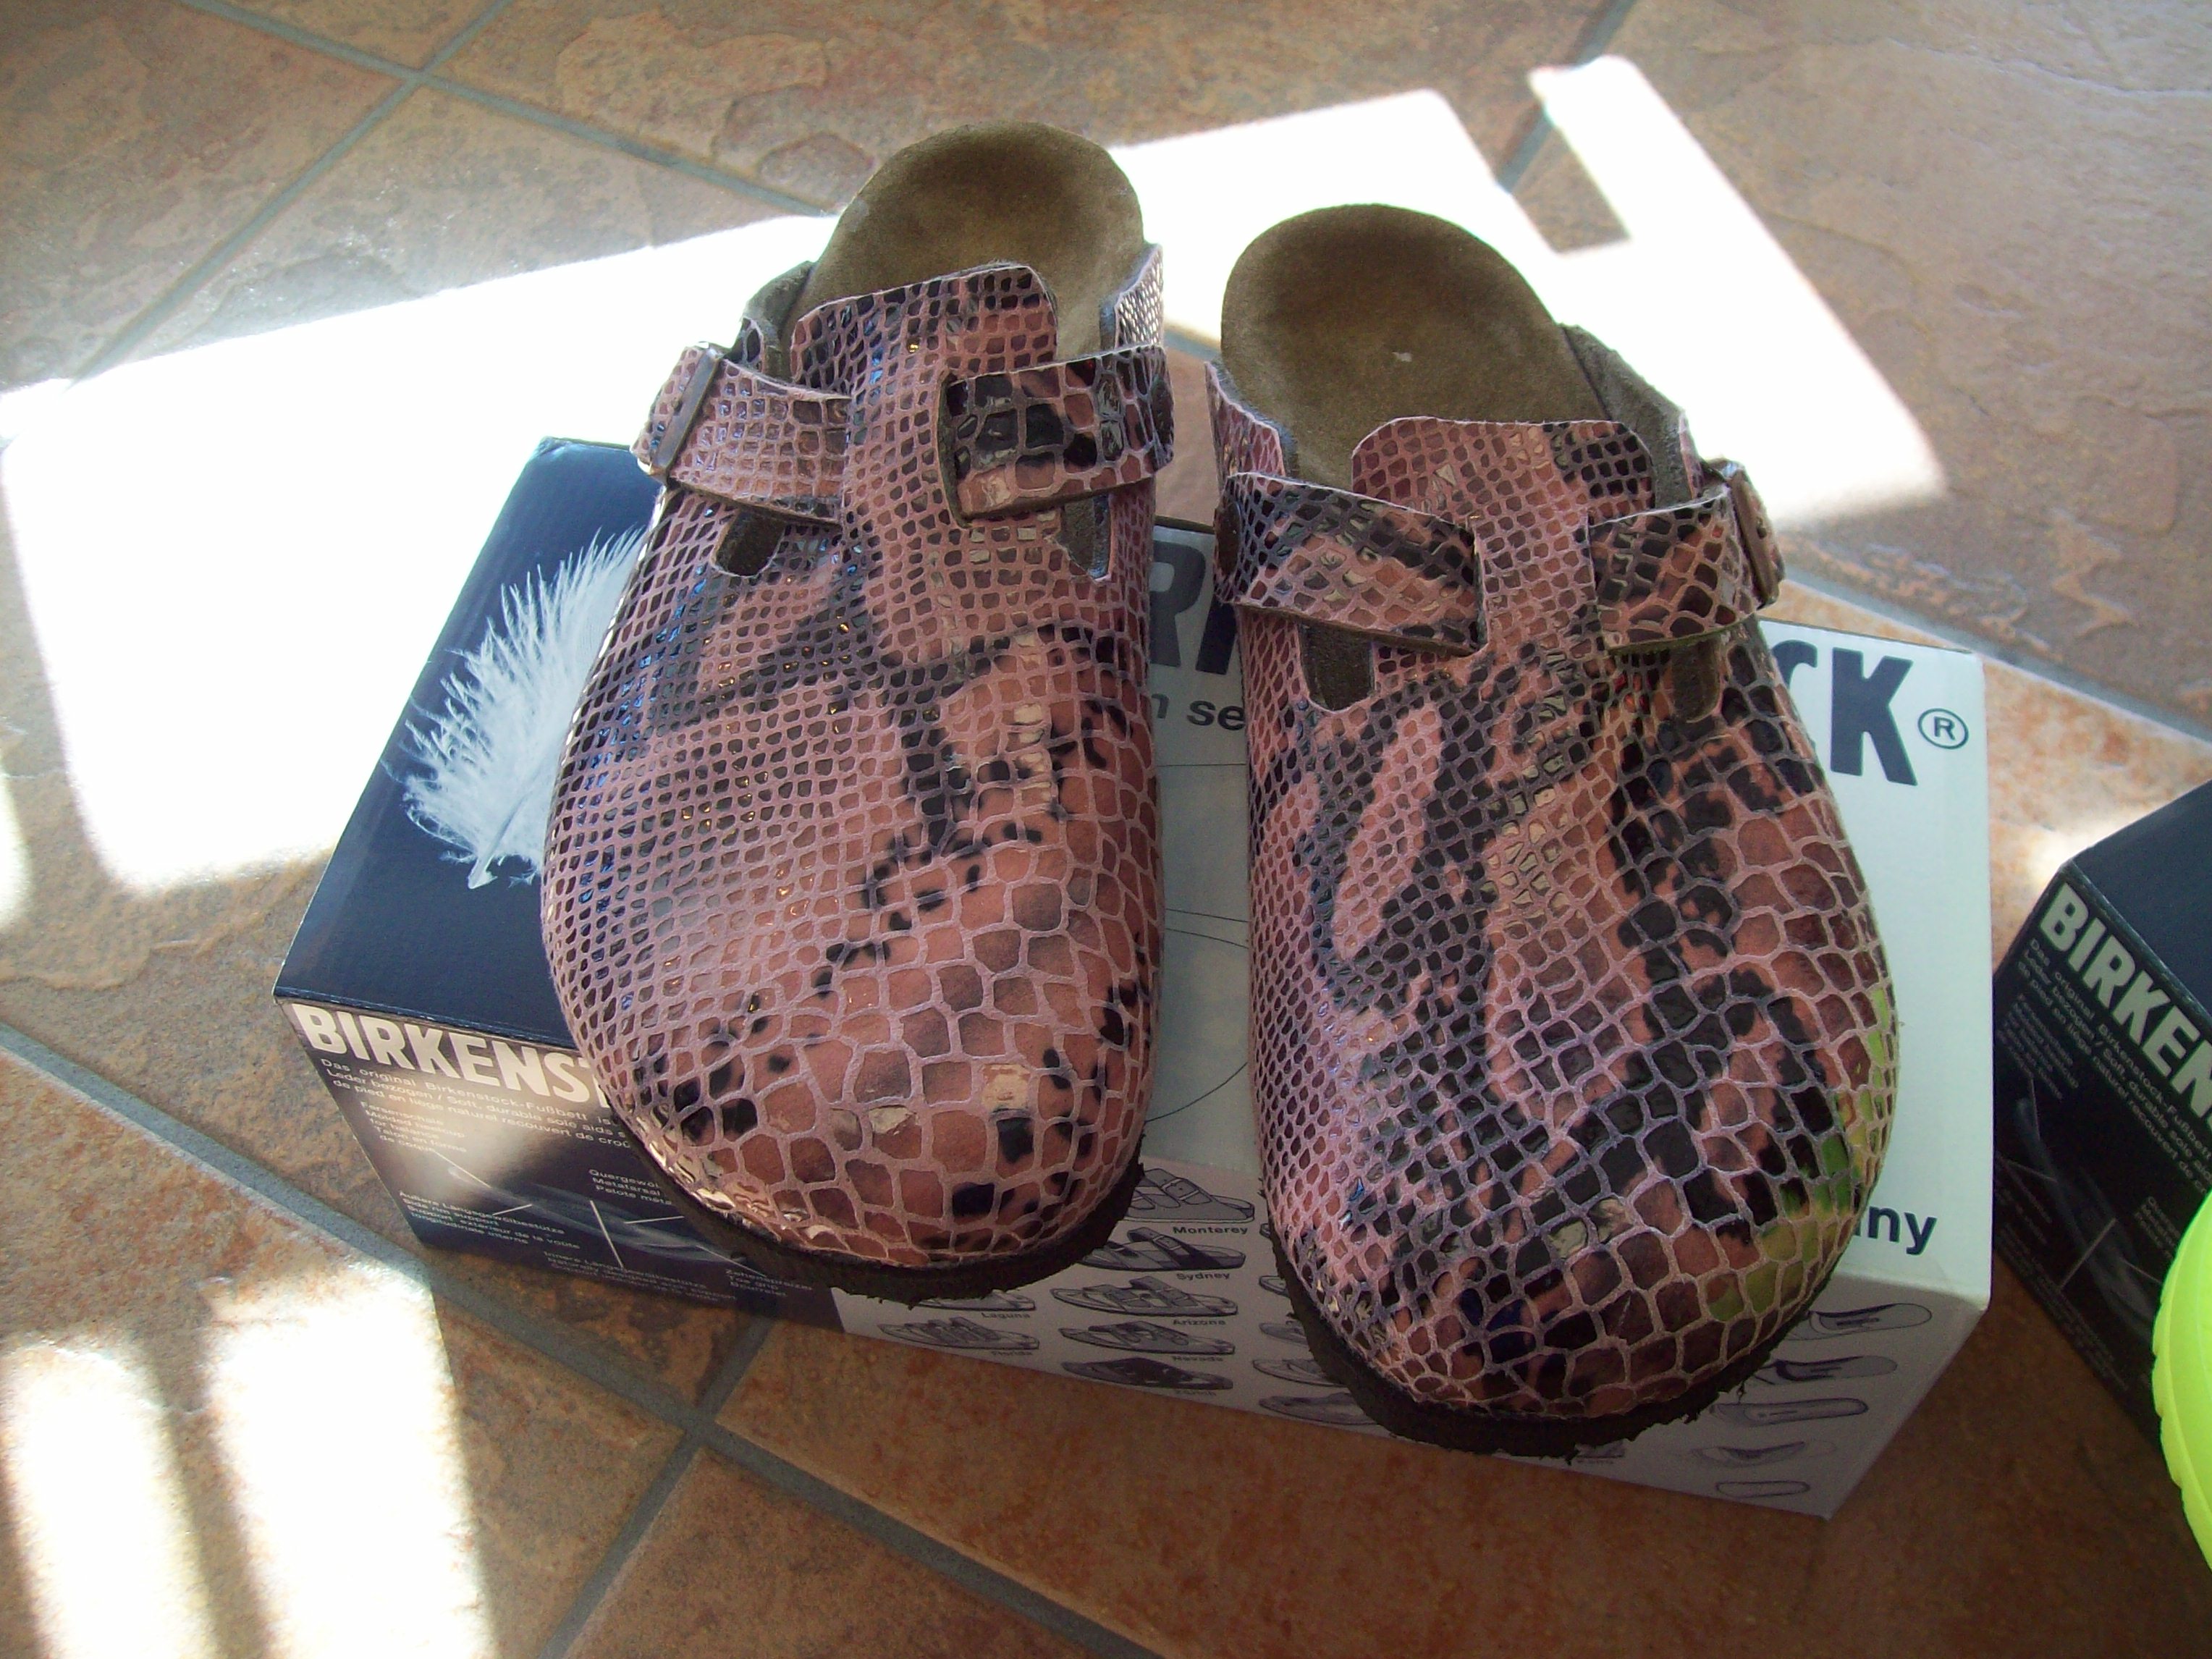 custom birkenstock sandals